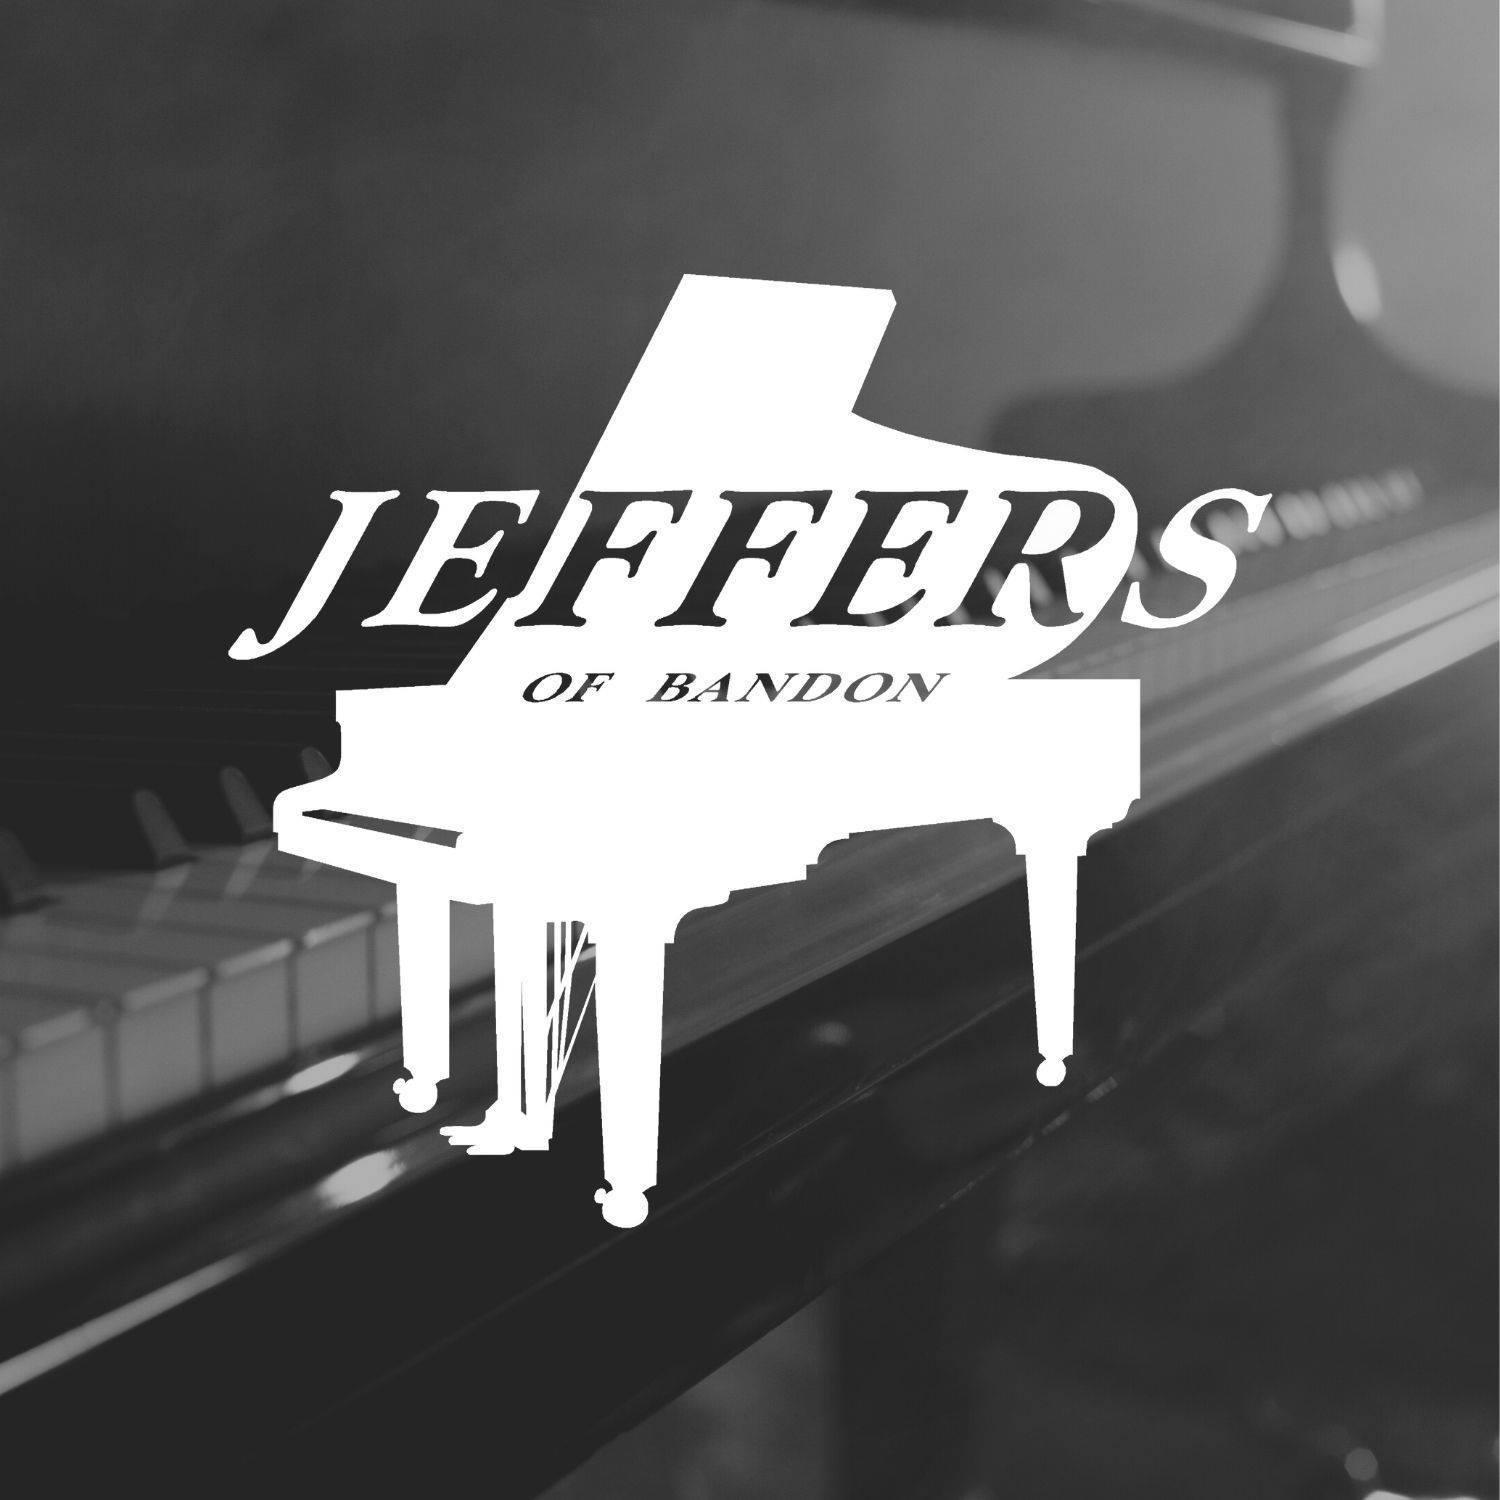 Jeffers of Bandon